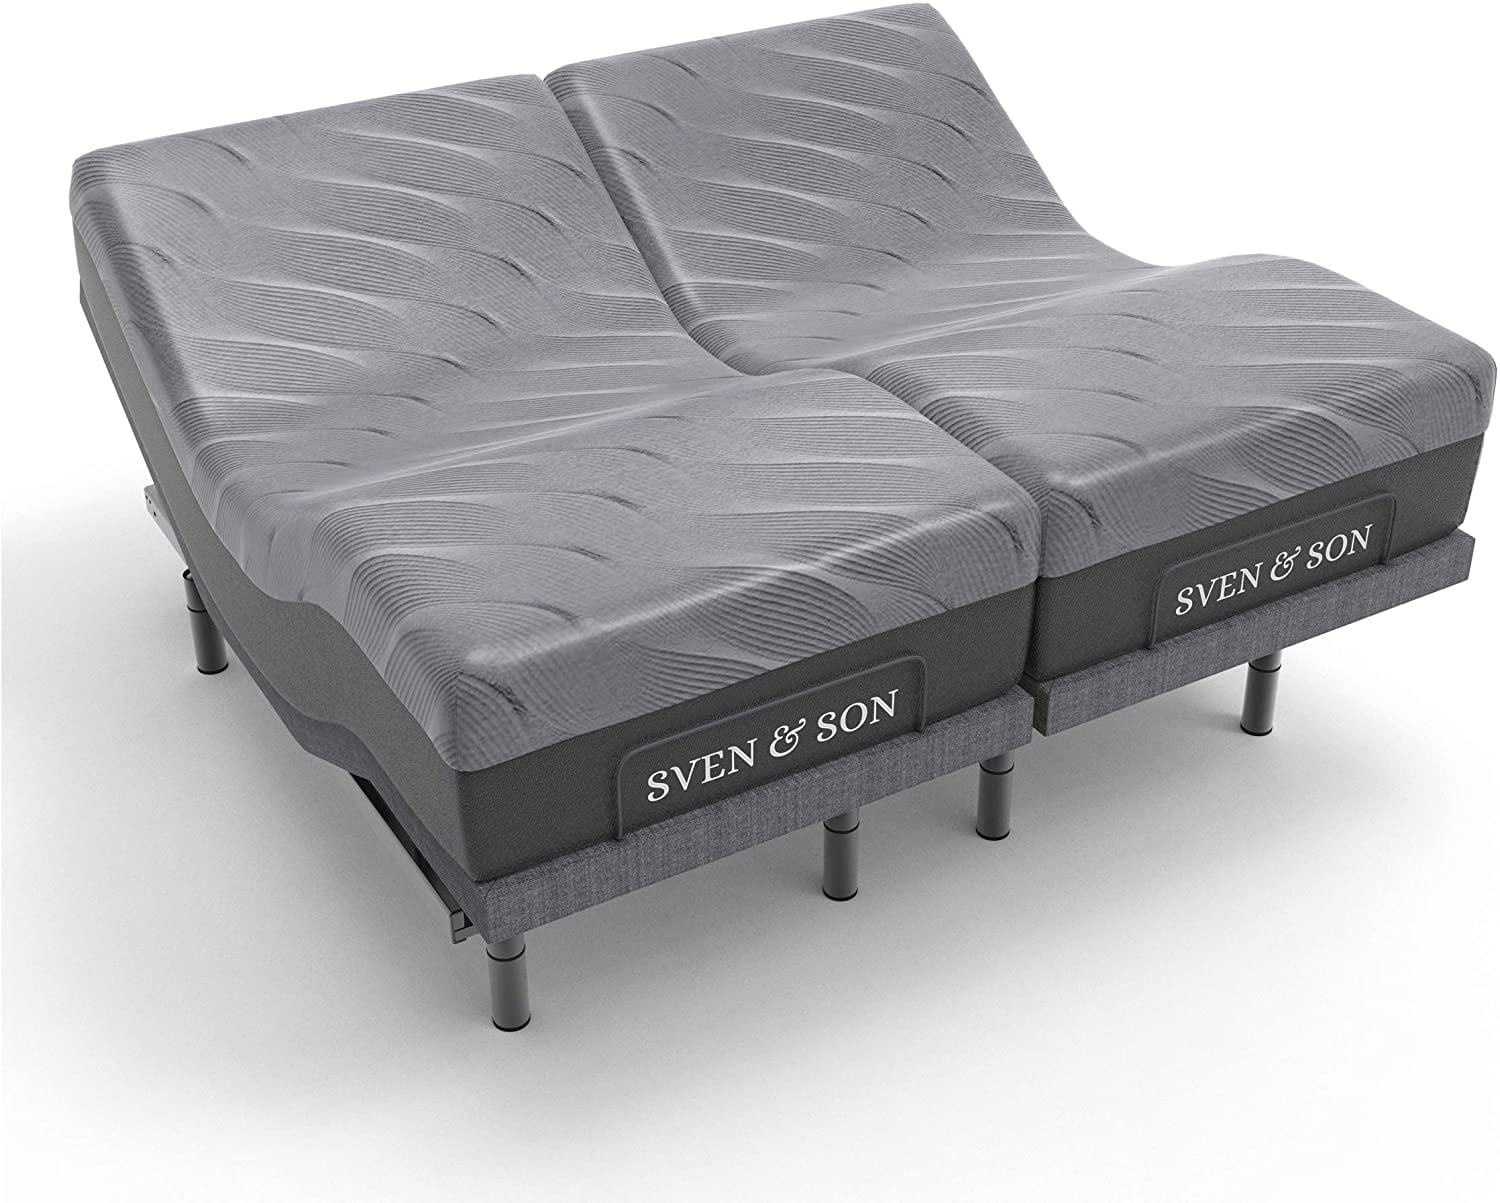 Sven Son Split King Adjustable Bed, California King Adjustable Bed Frame With Massage